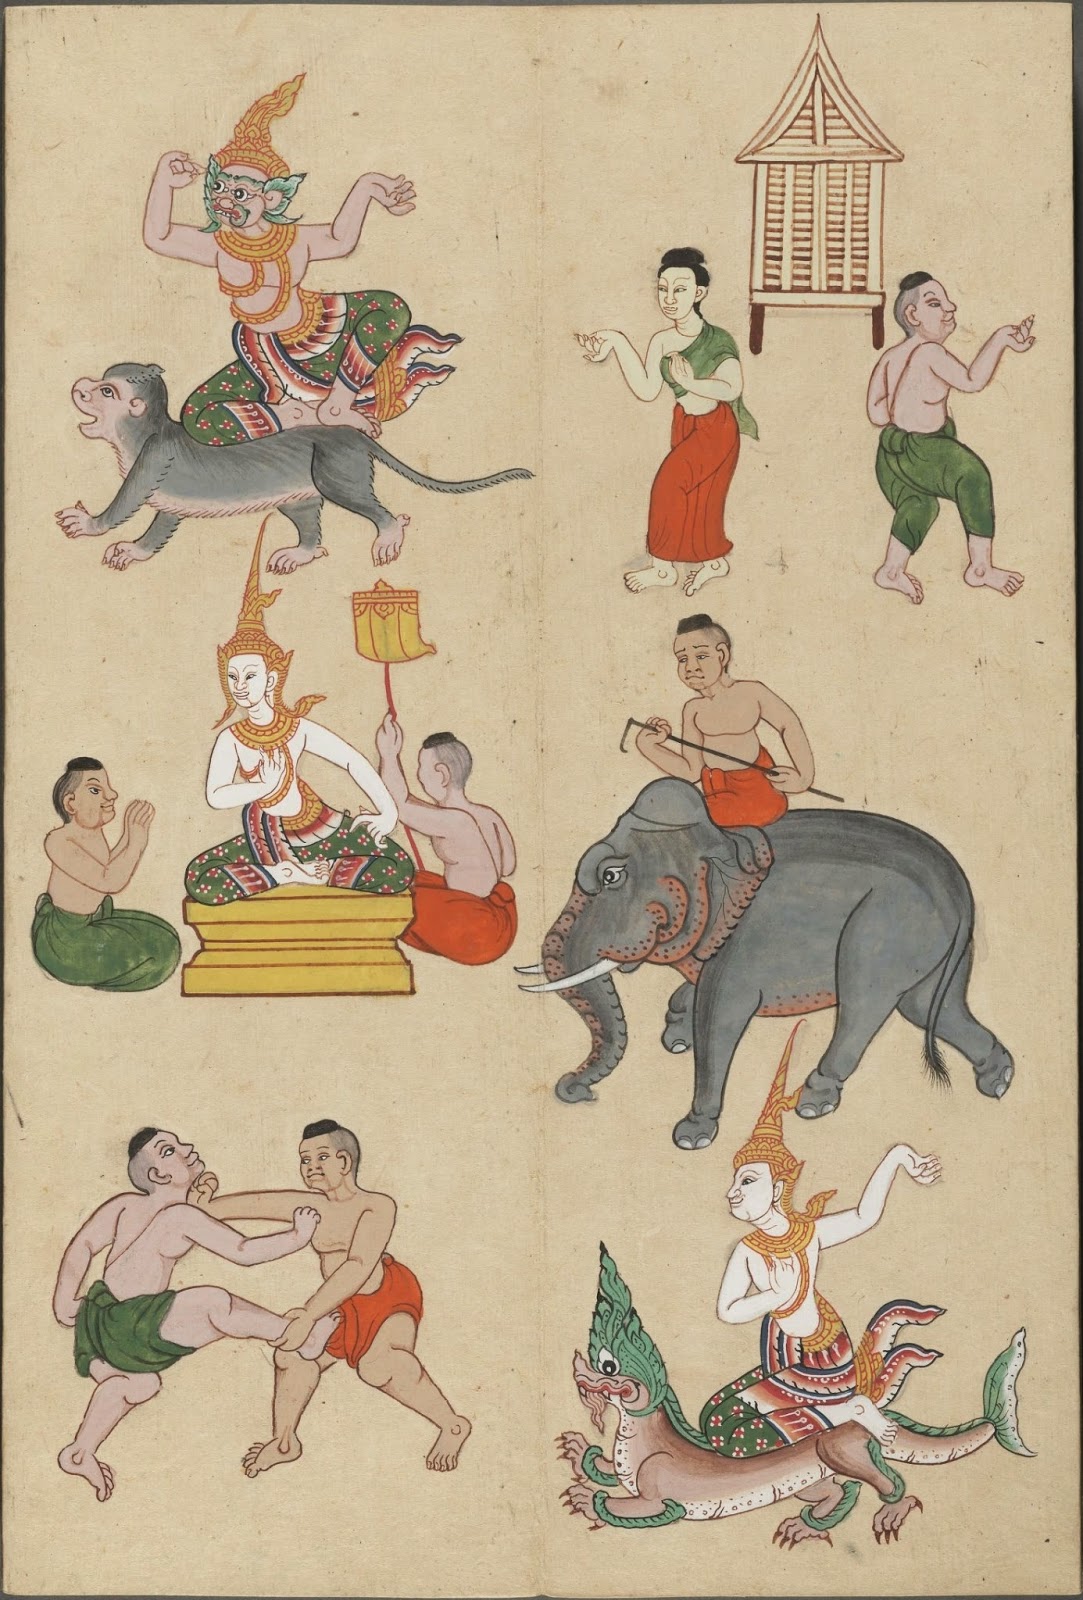 zodiac sigils indicating Thai Year of the Monkey